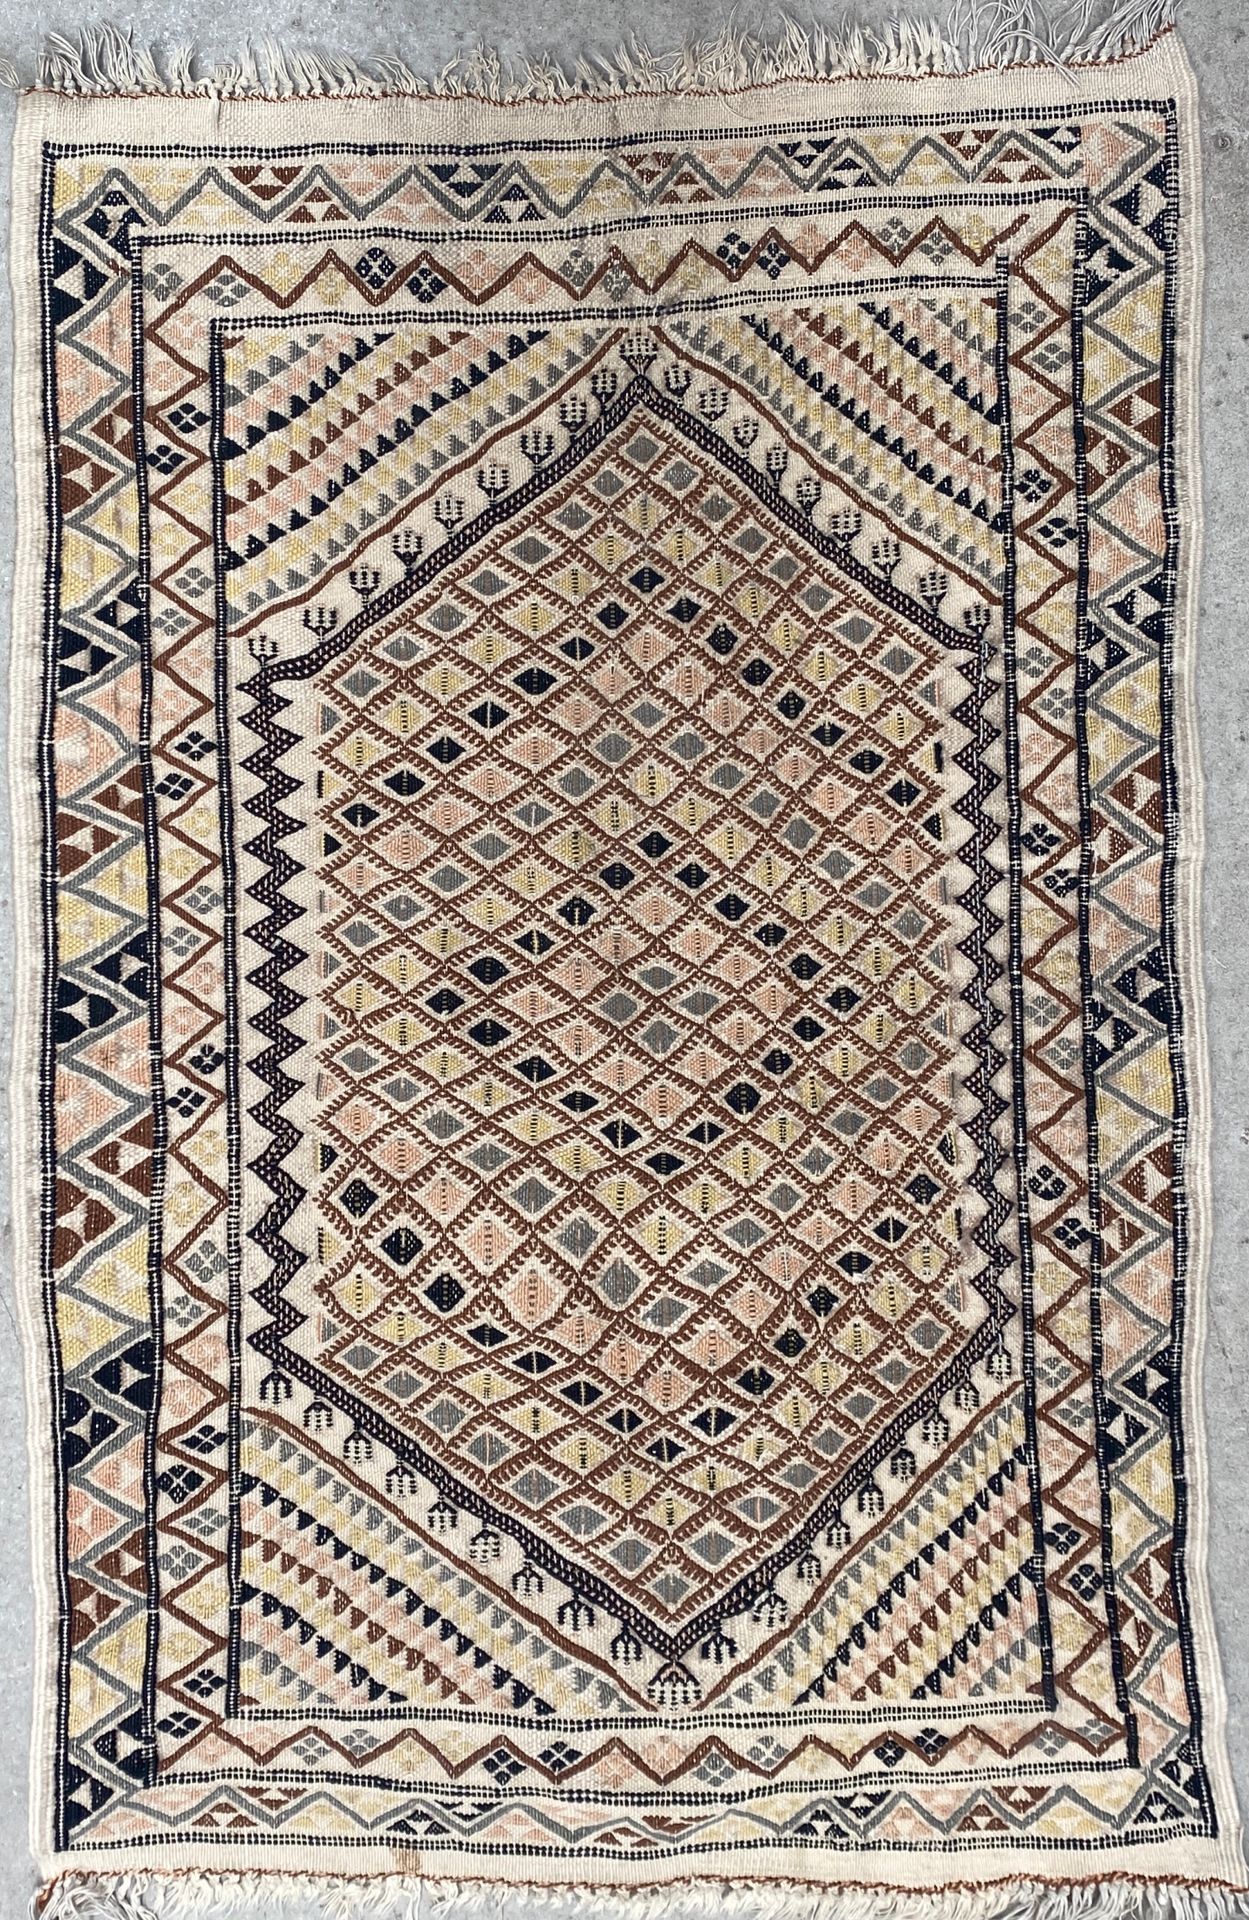 Null 菱形图案的羊毛祈祷毯

128x82.5厘米

磨损和污渍